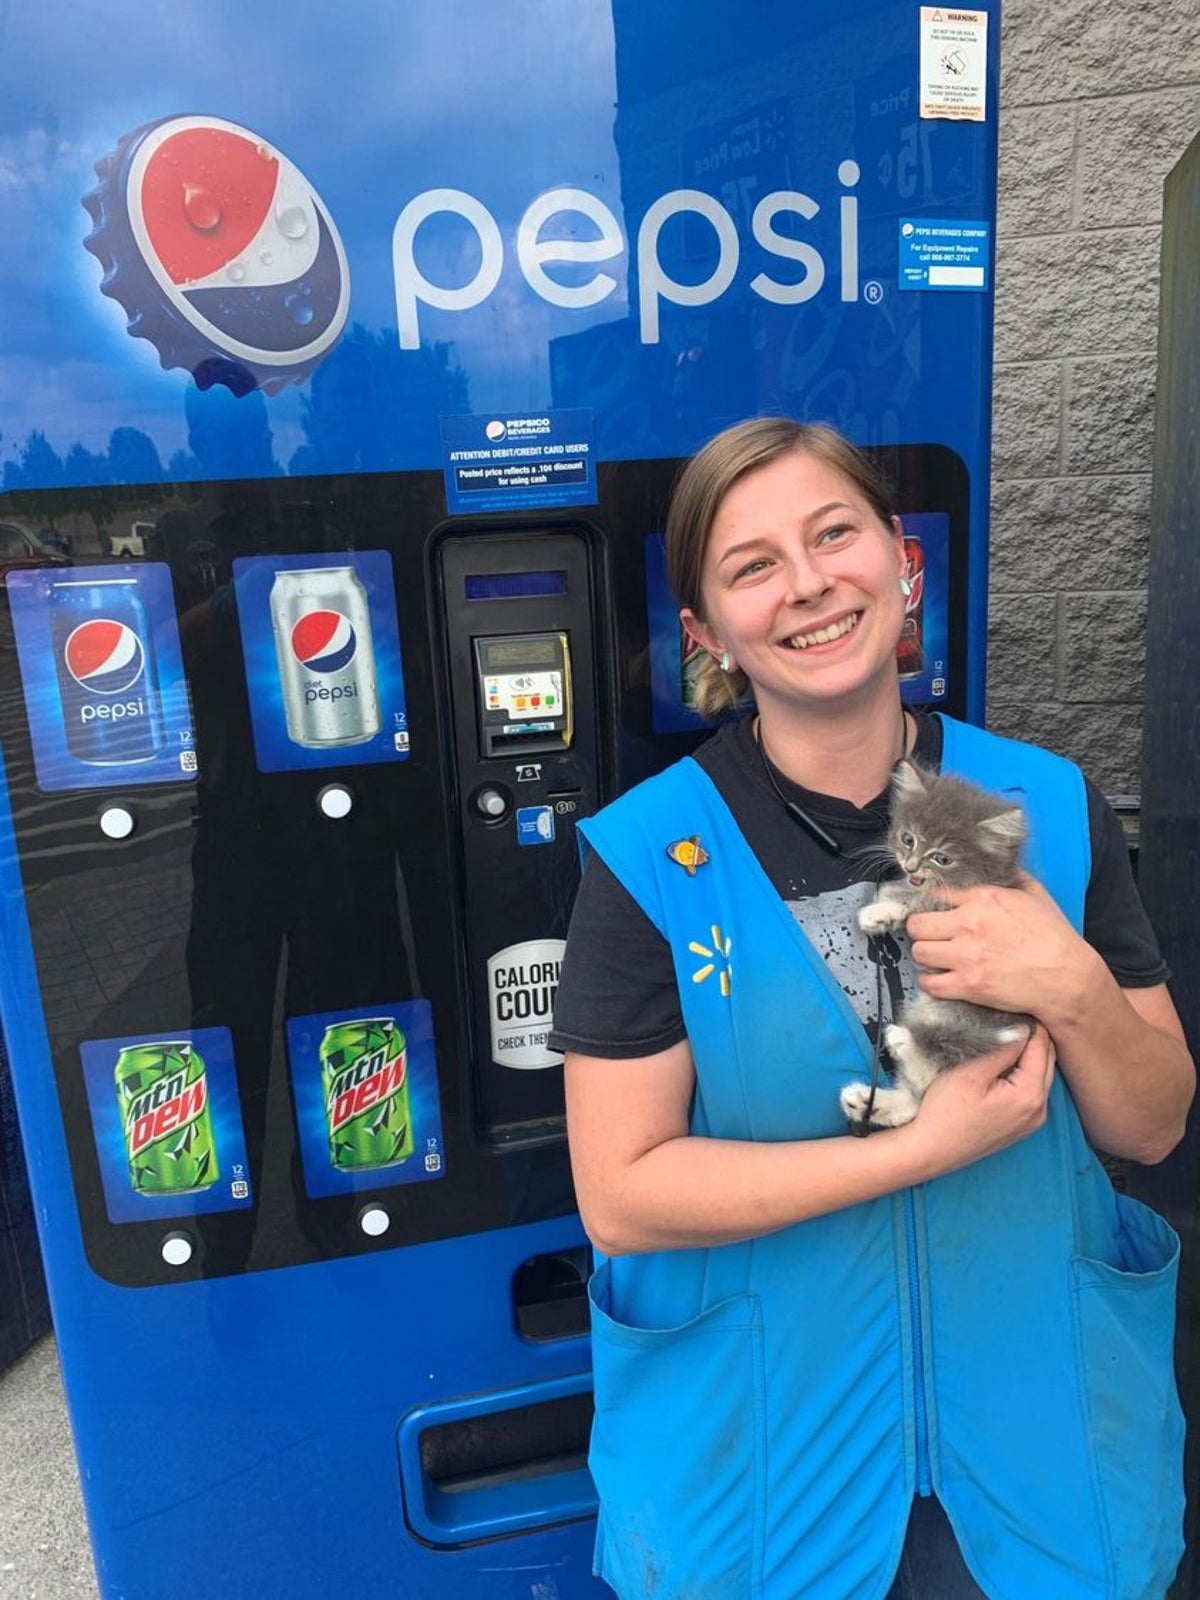 İtfaiye ekiplerinin 'Pepsi' adlı otomatta mahsur kalan kedi yavrusu: 'Kıpır kıpır ve neşe içinde'